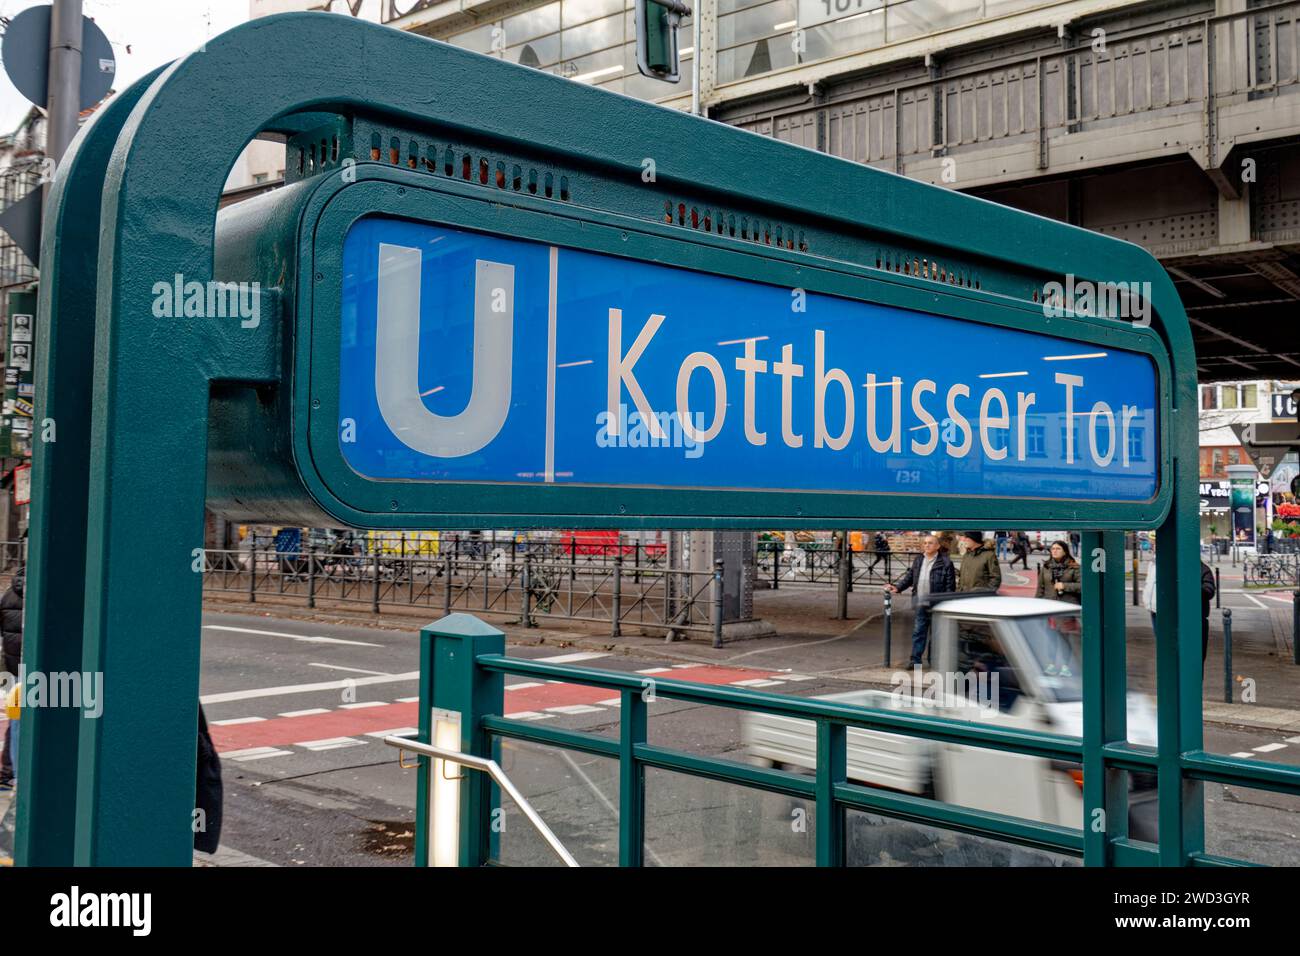 U-Bahn Schild Kottbusser Tor, Kreuzberg, Berlin , Stock Photo